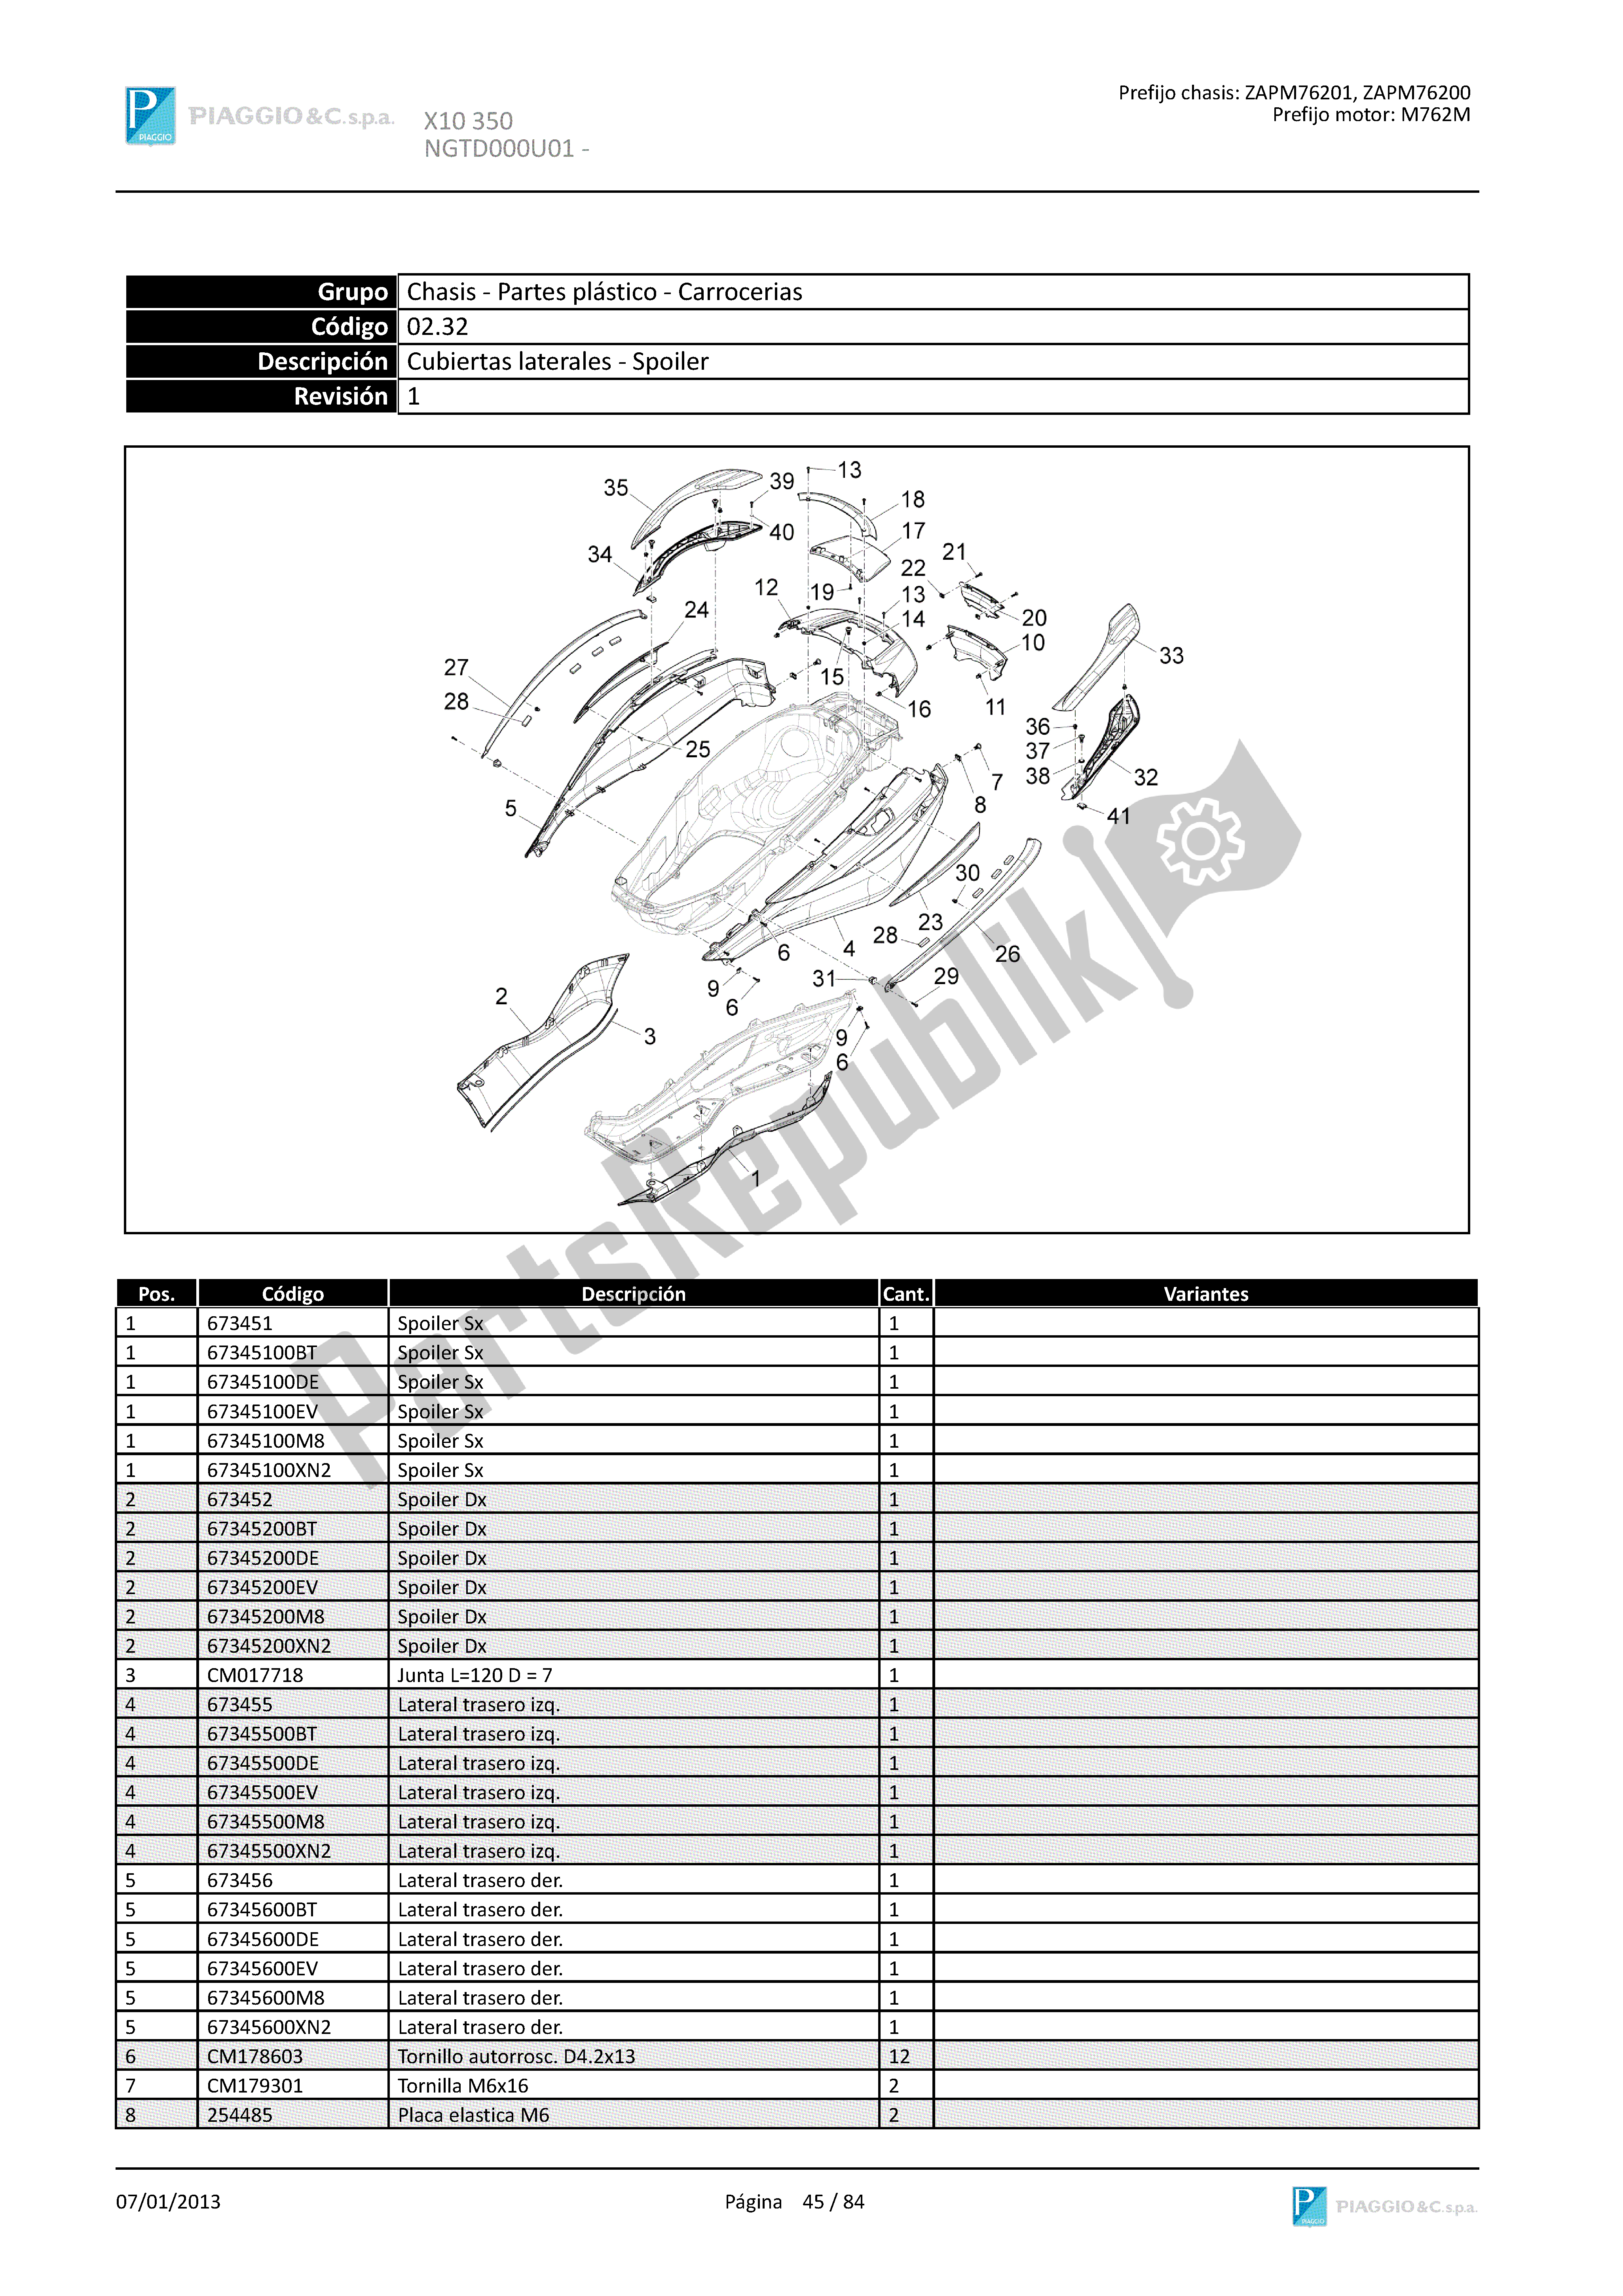 Todas las partes para Cubiertas Laterales - Spoiler de Piaggio X 10 350 2012 - 2013